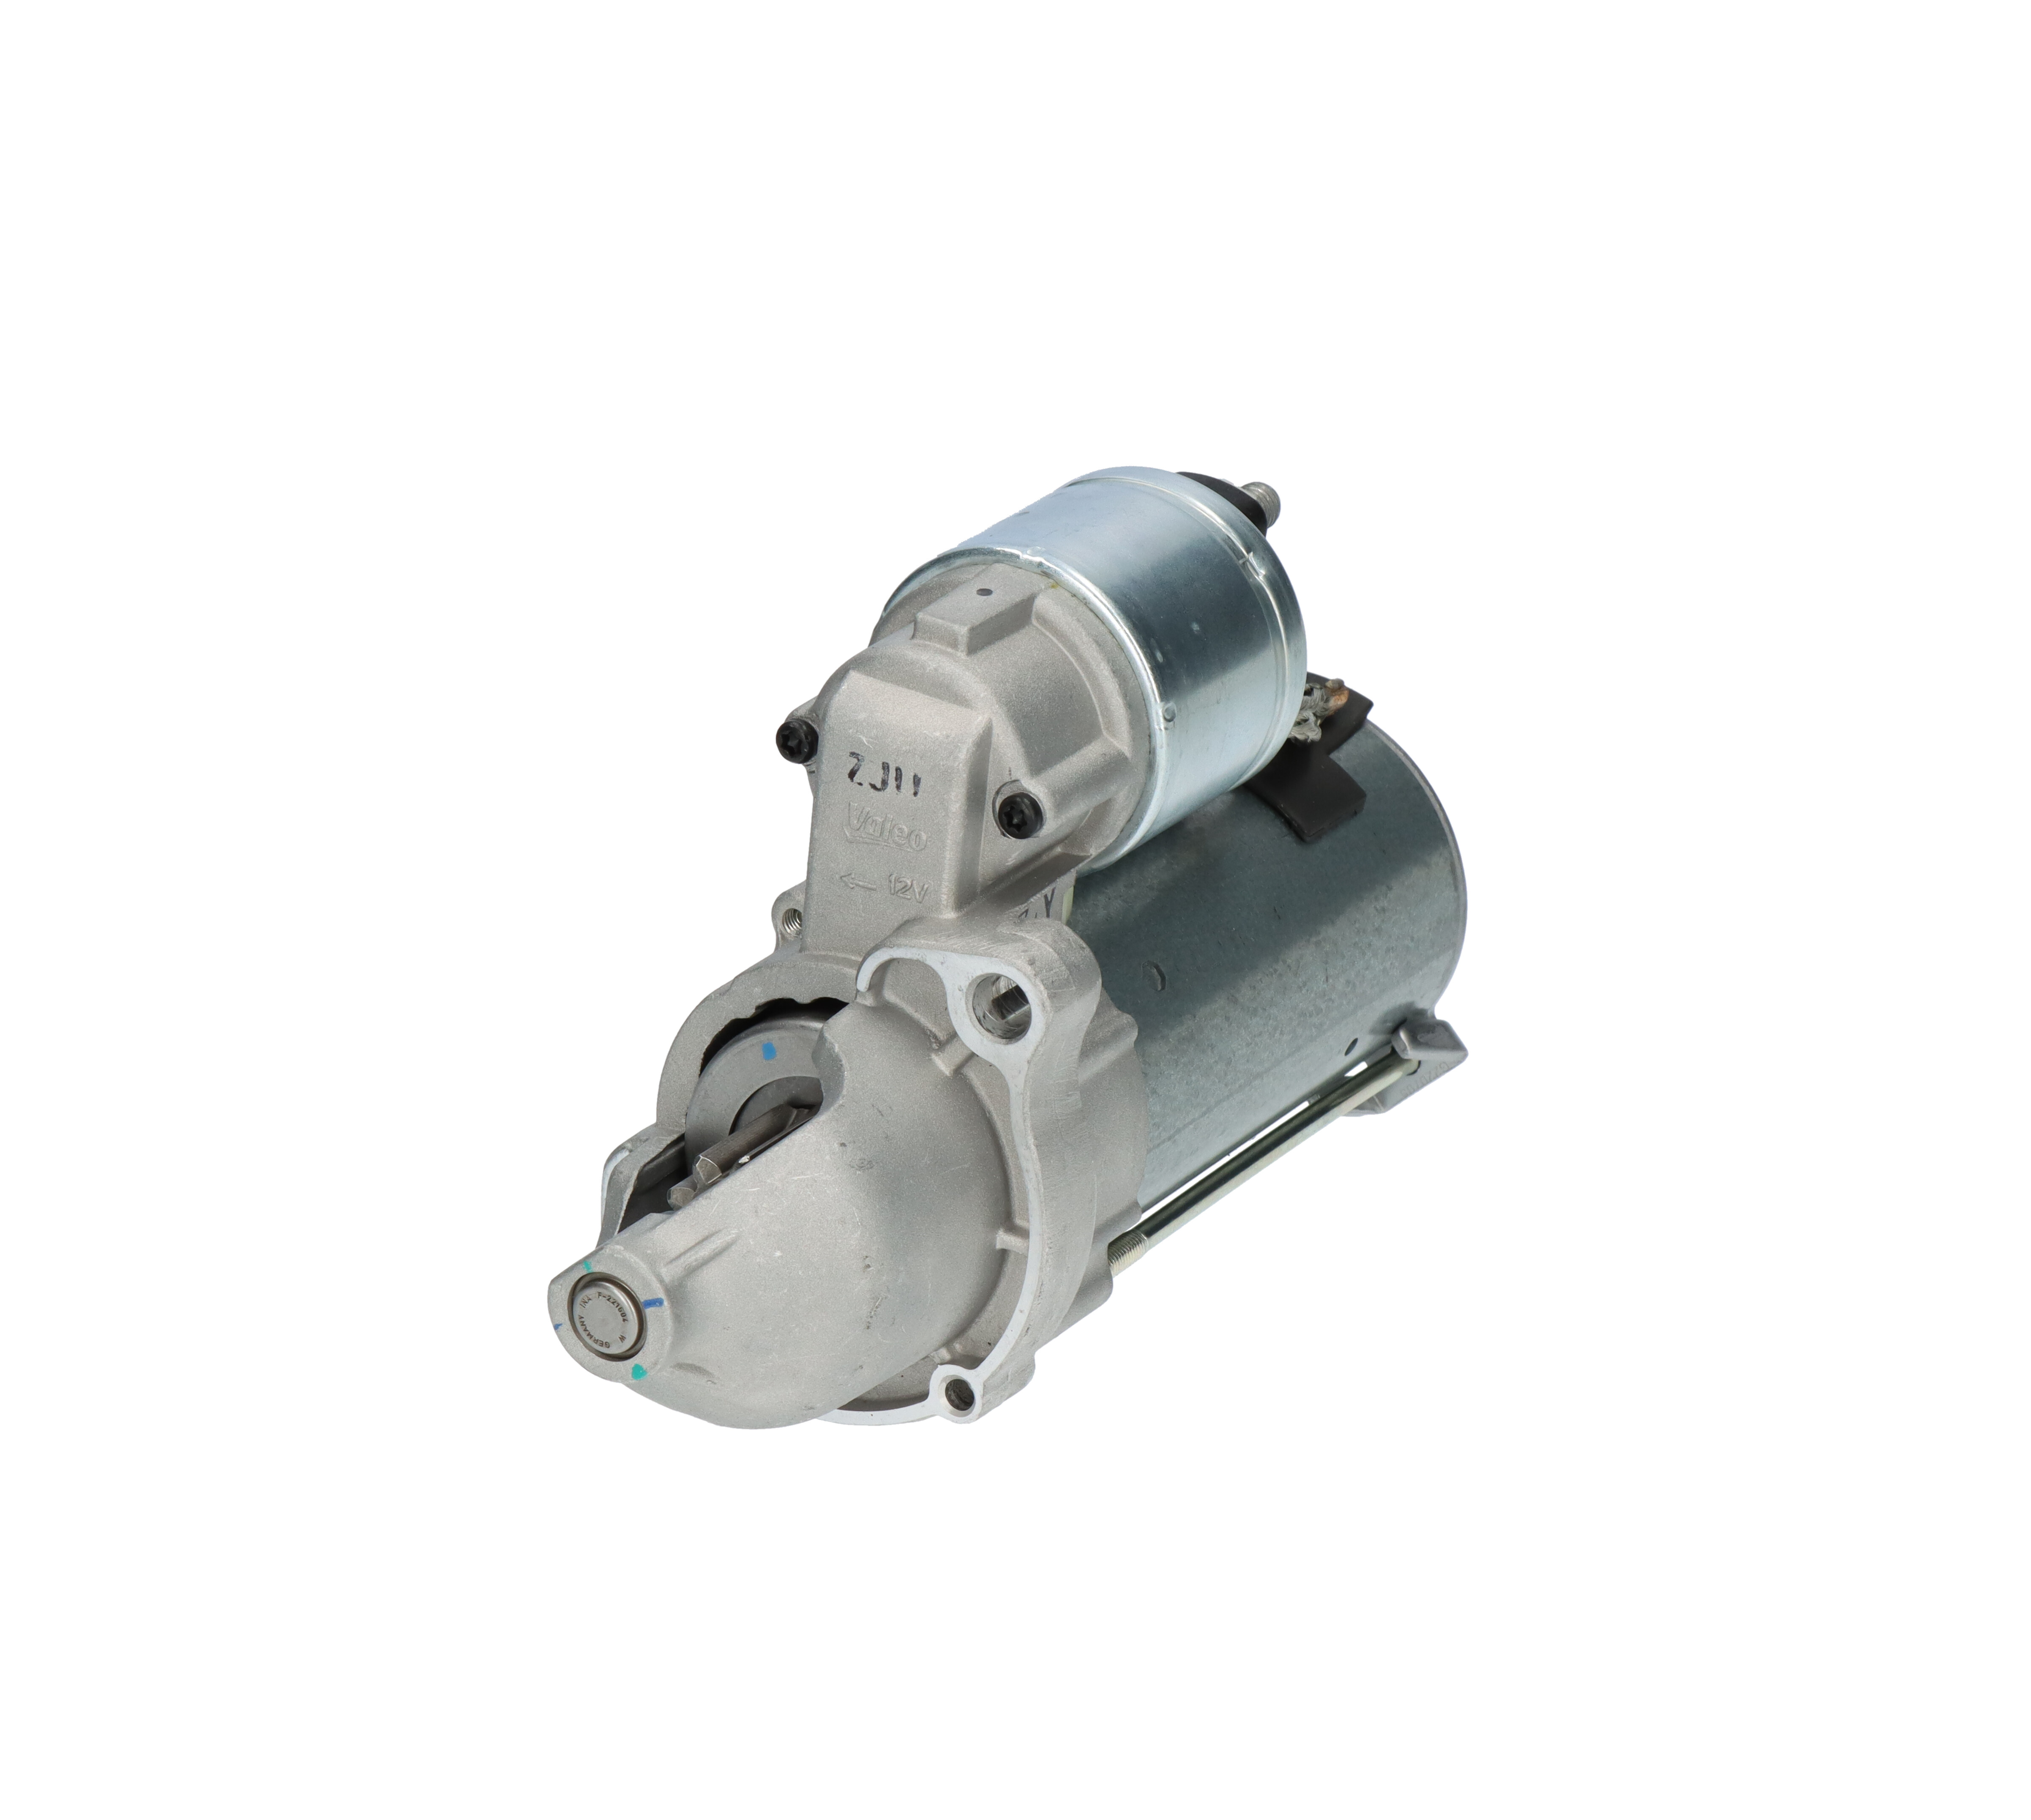 Starter motors VALEO NEW ORIGINAL PART 12V, 1,2kW, Number of Teeth: 9, NO, R 40, Ø 63 mm - 438177